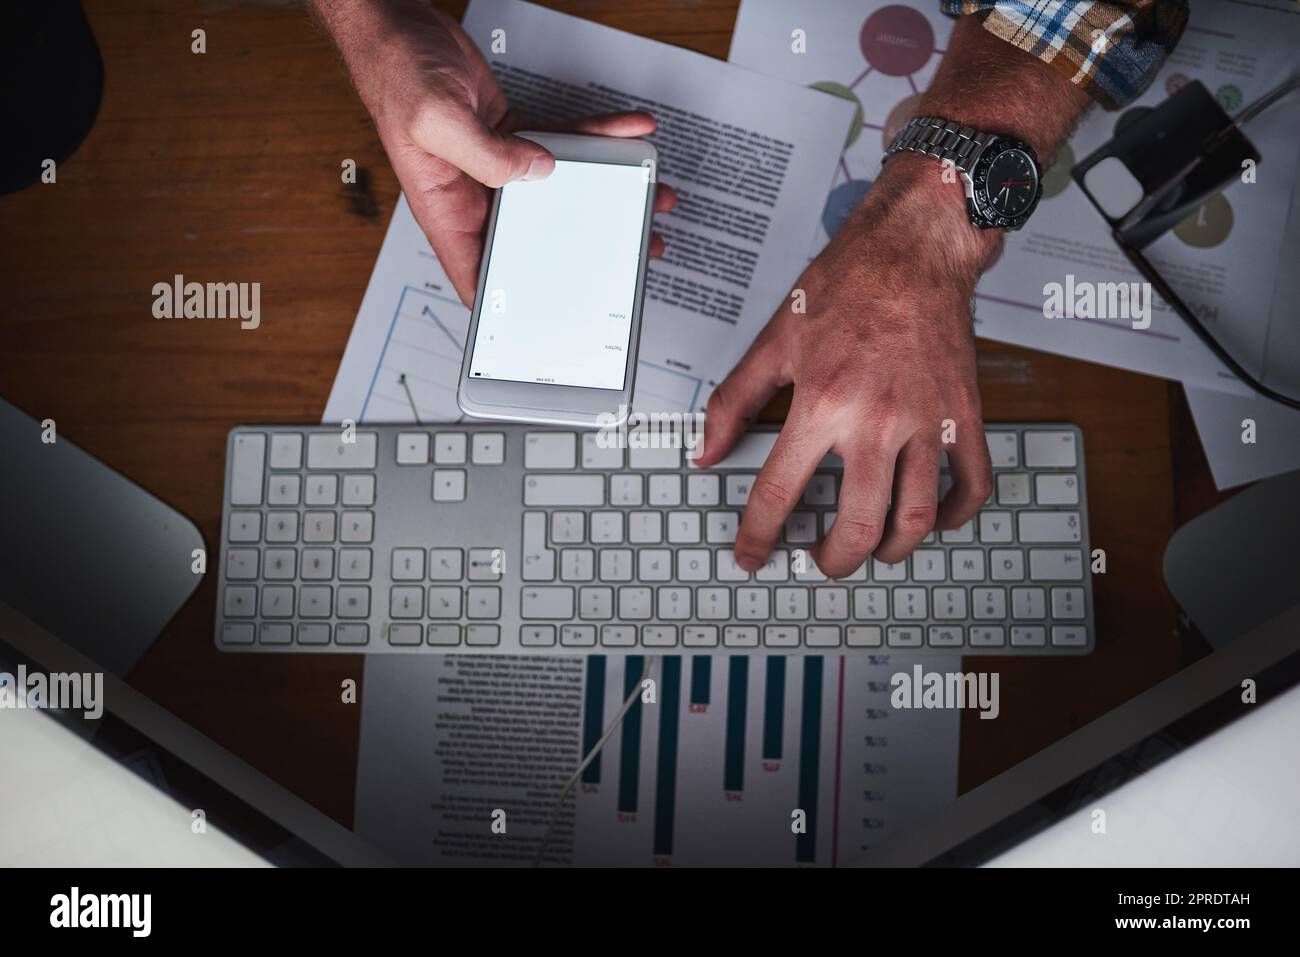 Les mains sur un clavier d'ordinateur et la saisie sur un téléphone dans un bureau avec travail de papier par dessus. Gros plan d'un homme d'affaires qui navigue sur Internet, termine un rapport ou envoie un e-mail de communication Banque D'Images